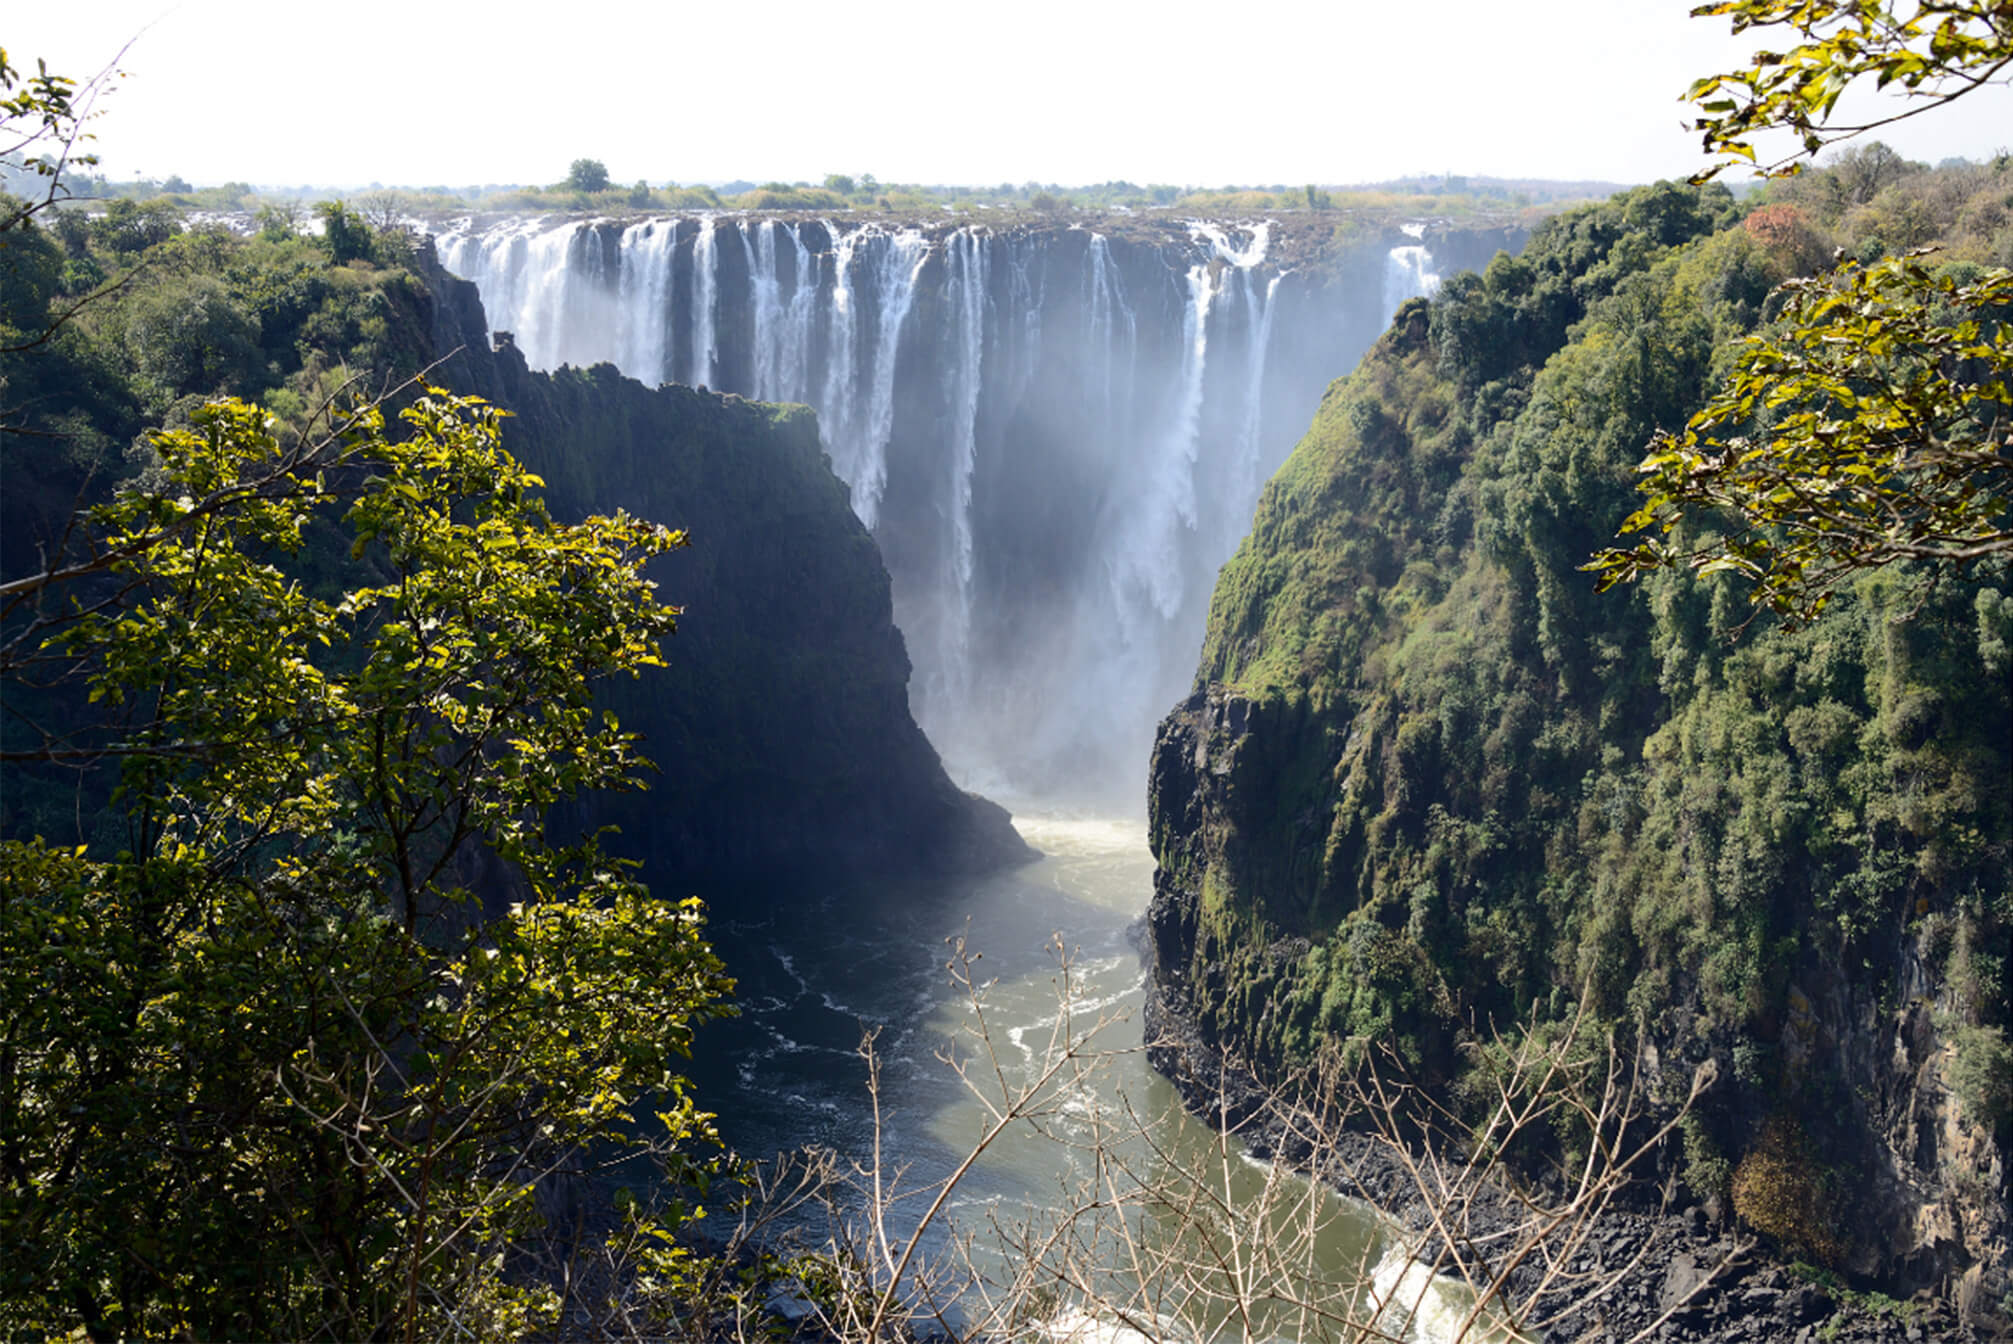 Zambia landscape and falls